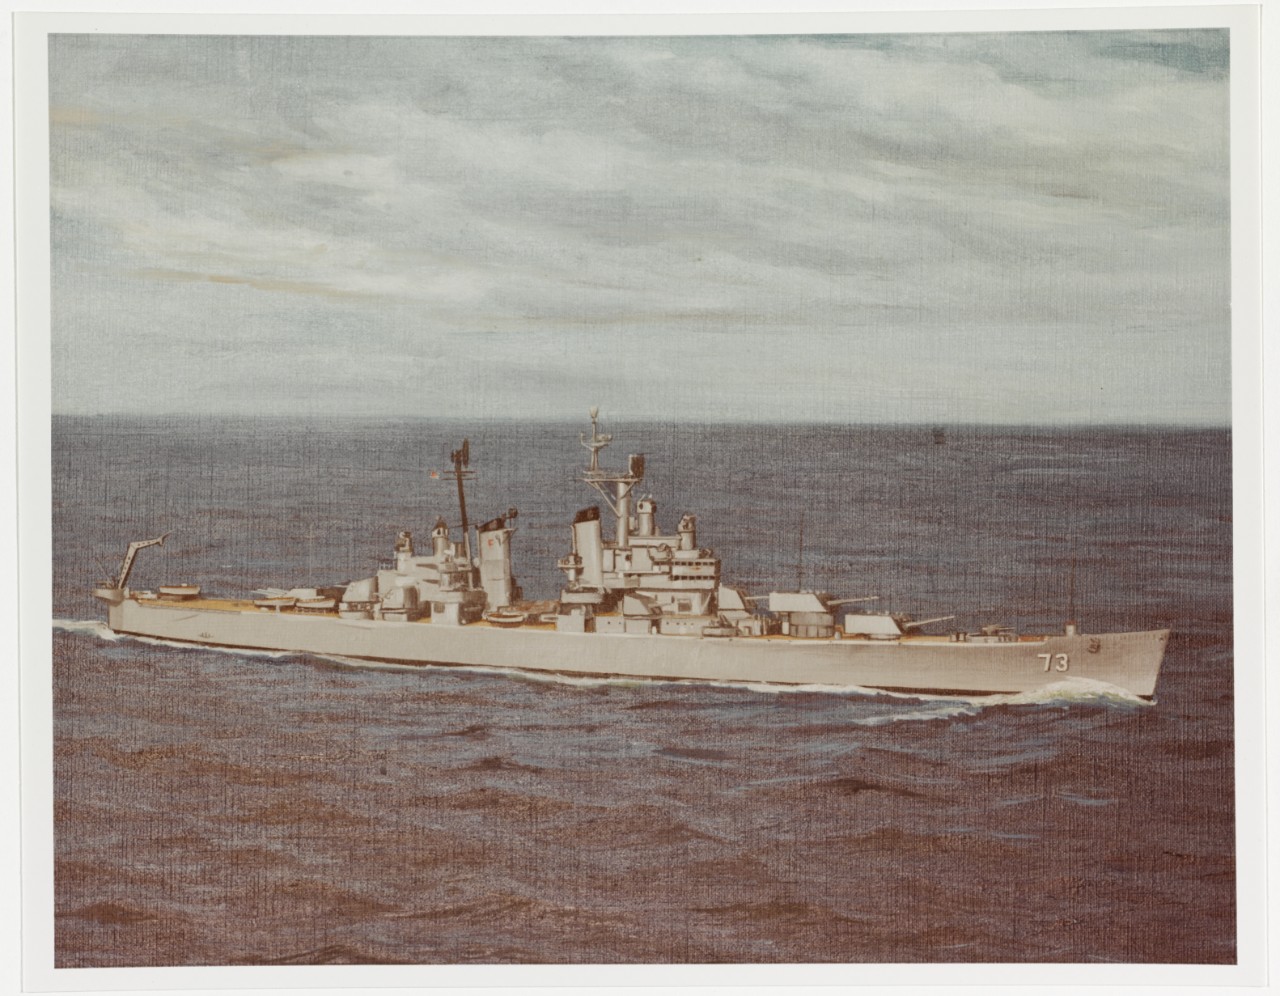 USS SAINT PAUL (CA-73)